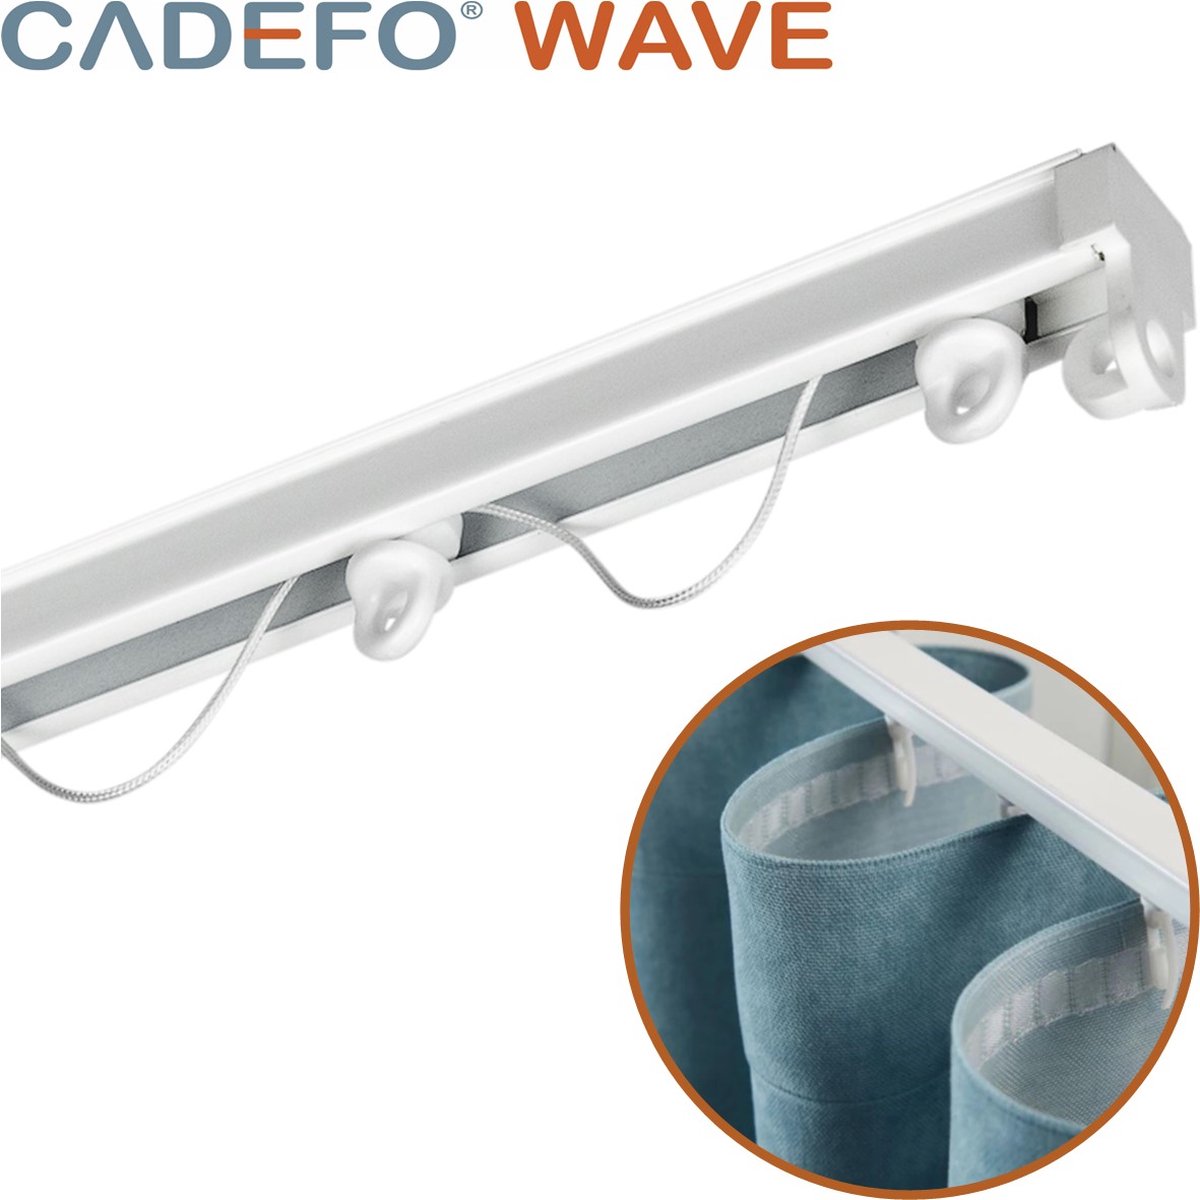 CADEFO WAVE (501 - 550 cm) Gordijnrails - Compleet op maat! - UIT 1 STUK - Leverbaar tot 6 meter - Plafondbevestiging - Lengte 545 cm